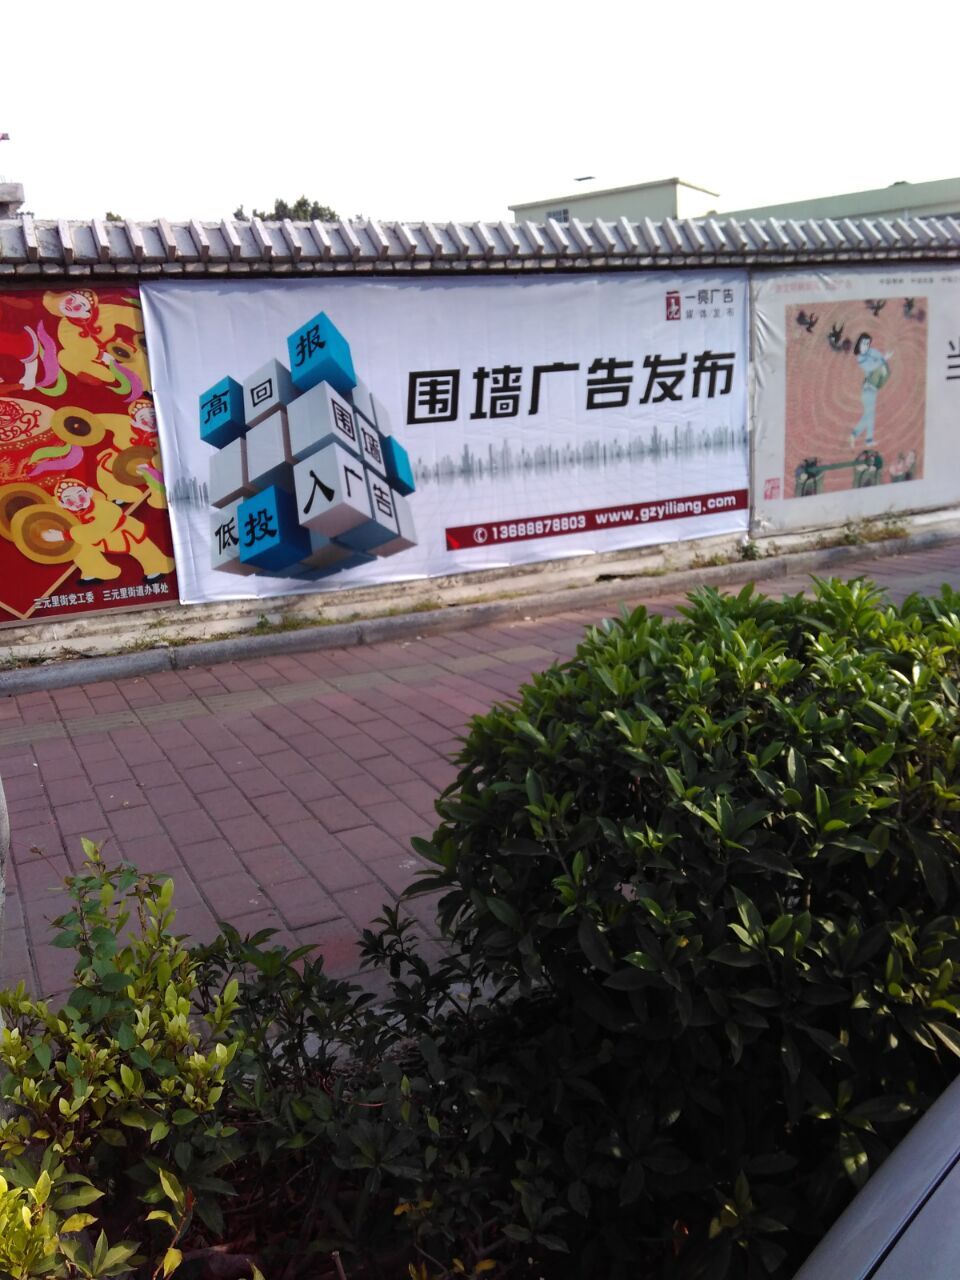 供应广州广告制作围墙广告发布公司/广州媒体发布